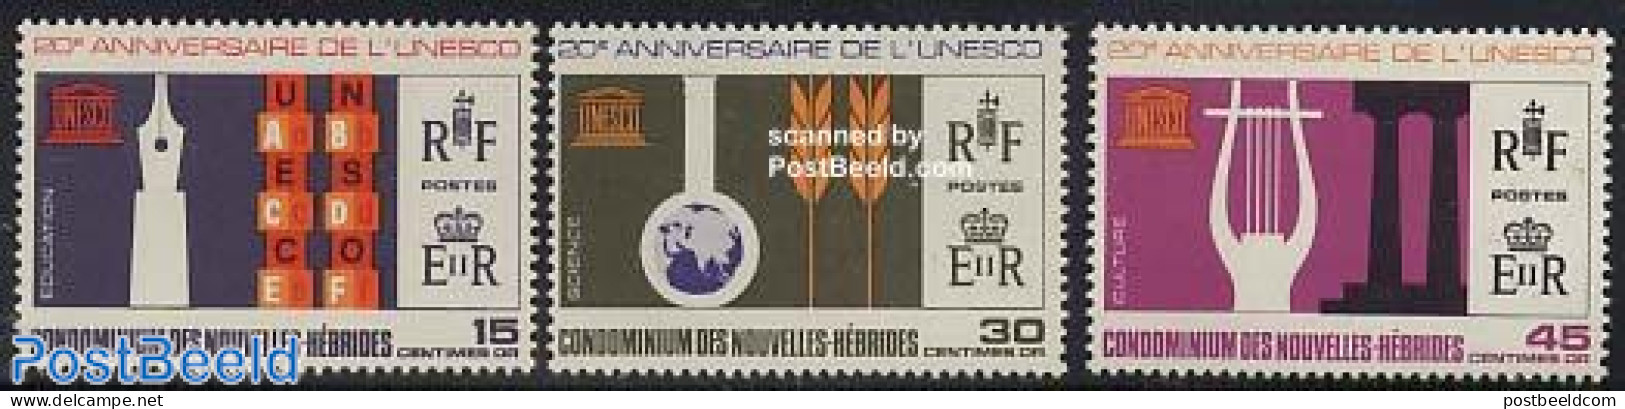 New Hebrides 1966 20 Years UNESCO 3v F, Mint NH, History - Unesco - Ongebruikt